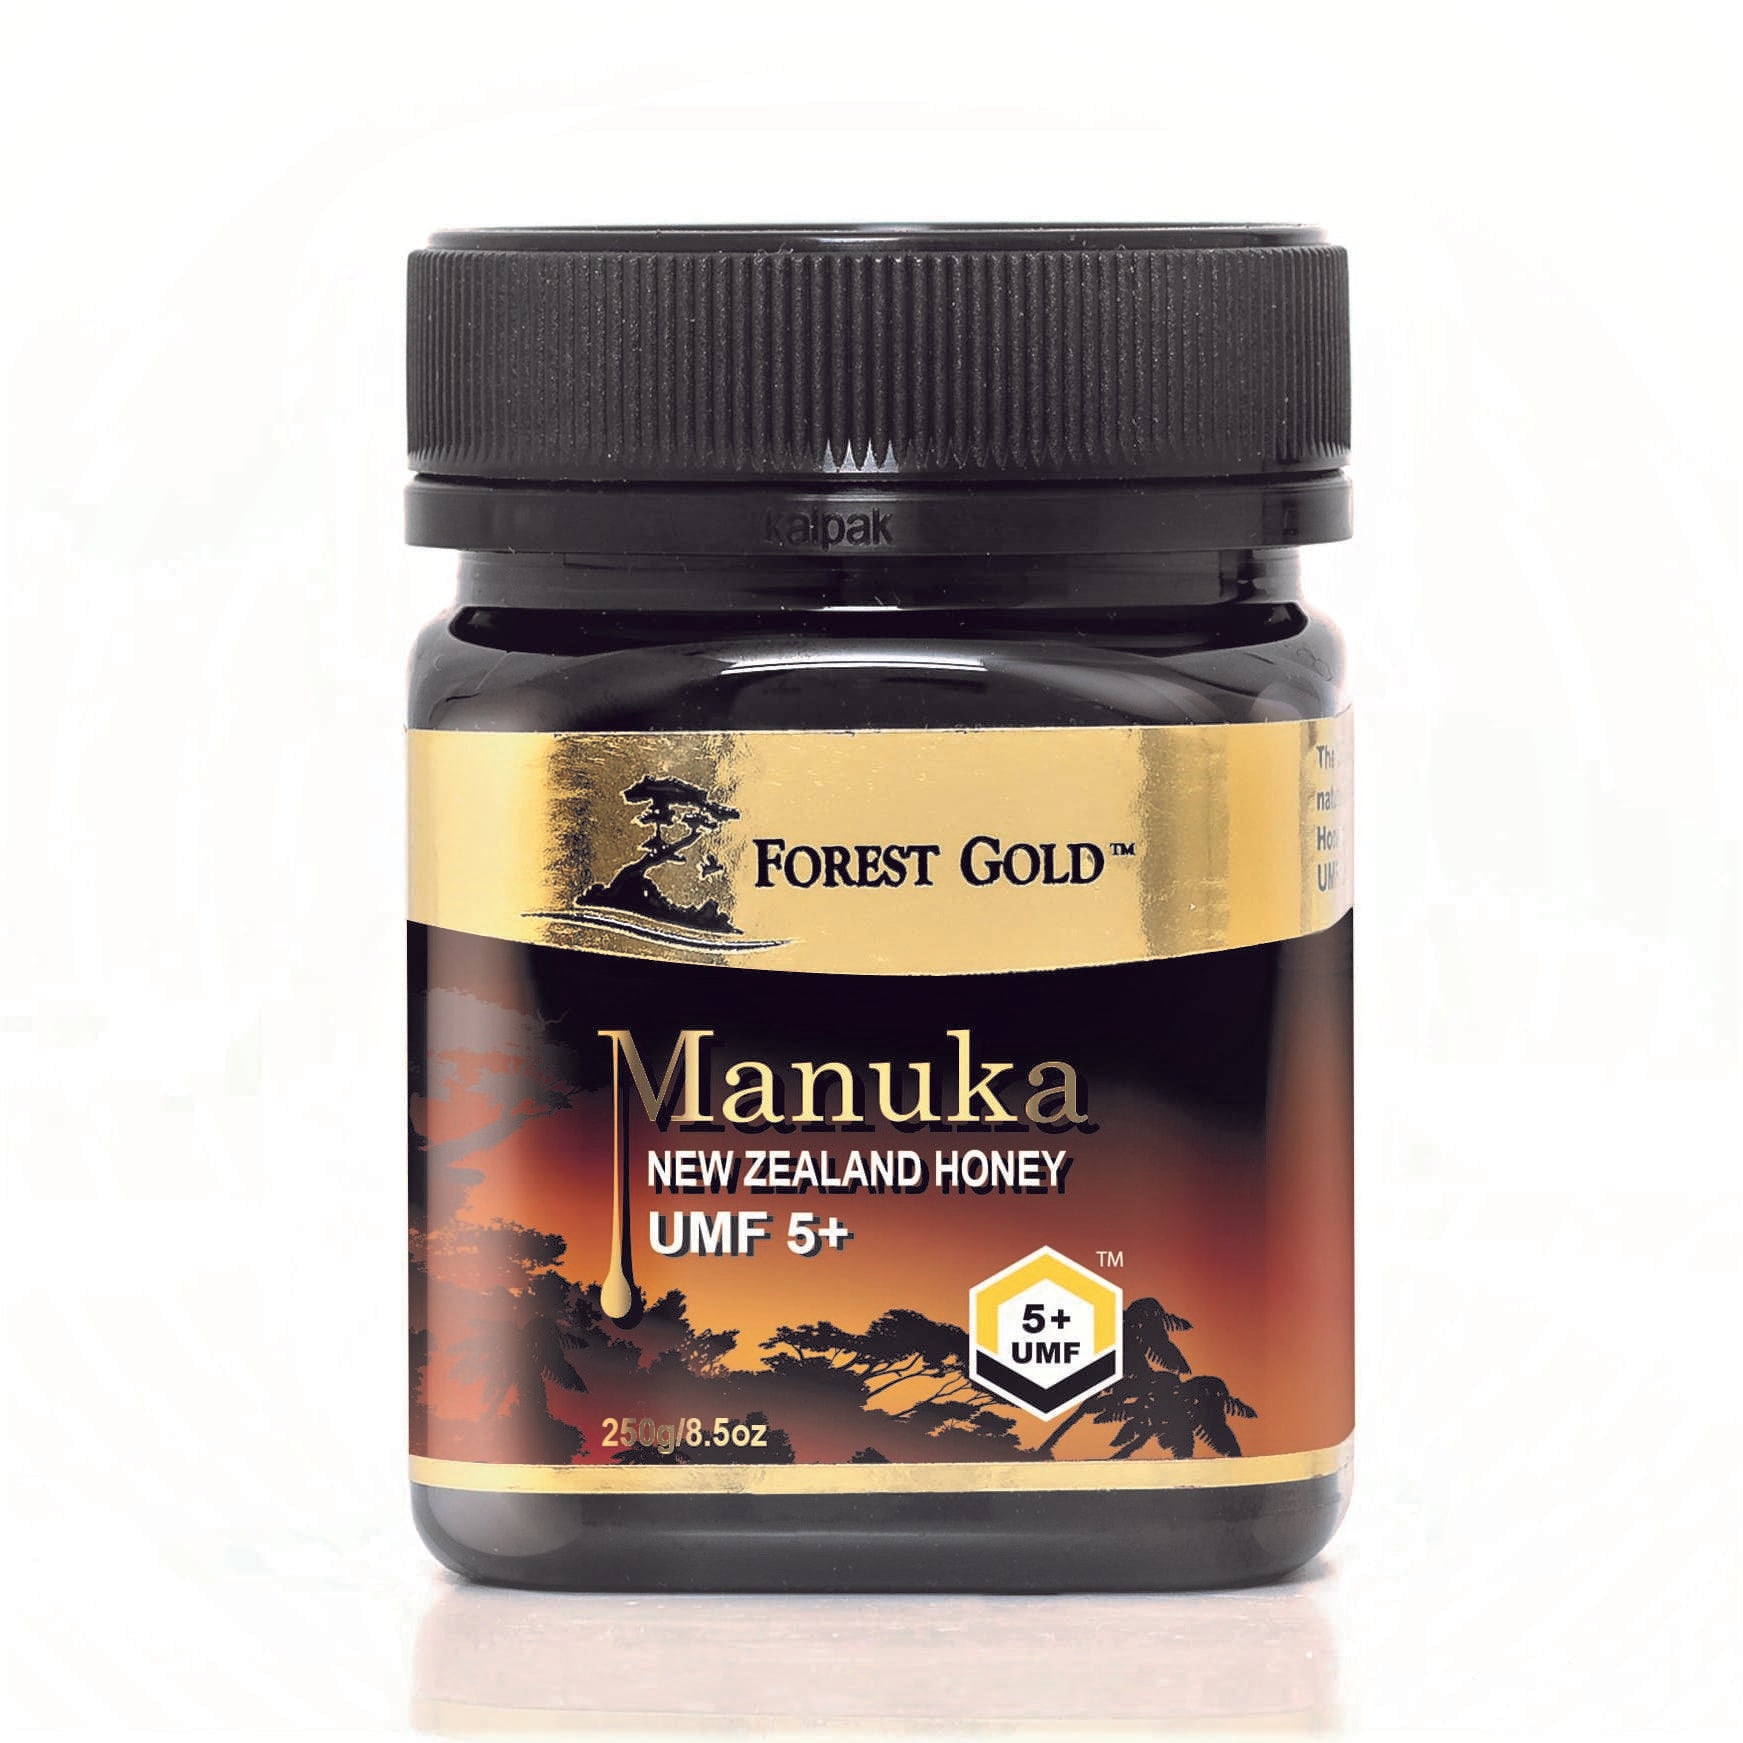 Forest Gold Manuka UMF 5+ Certified Honey-250g Manuka Honey Organichub   